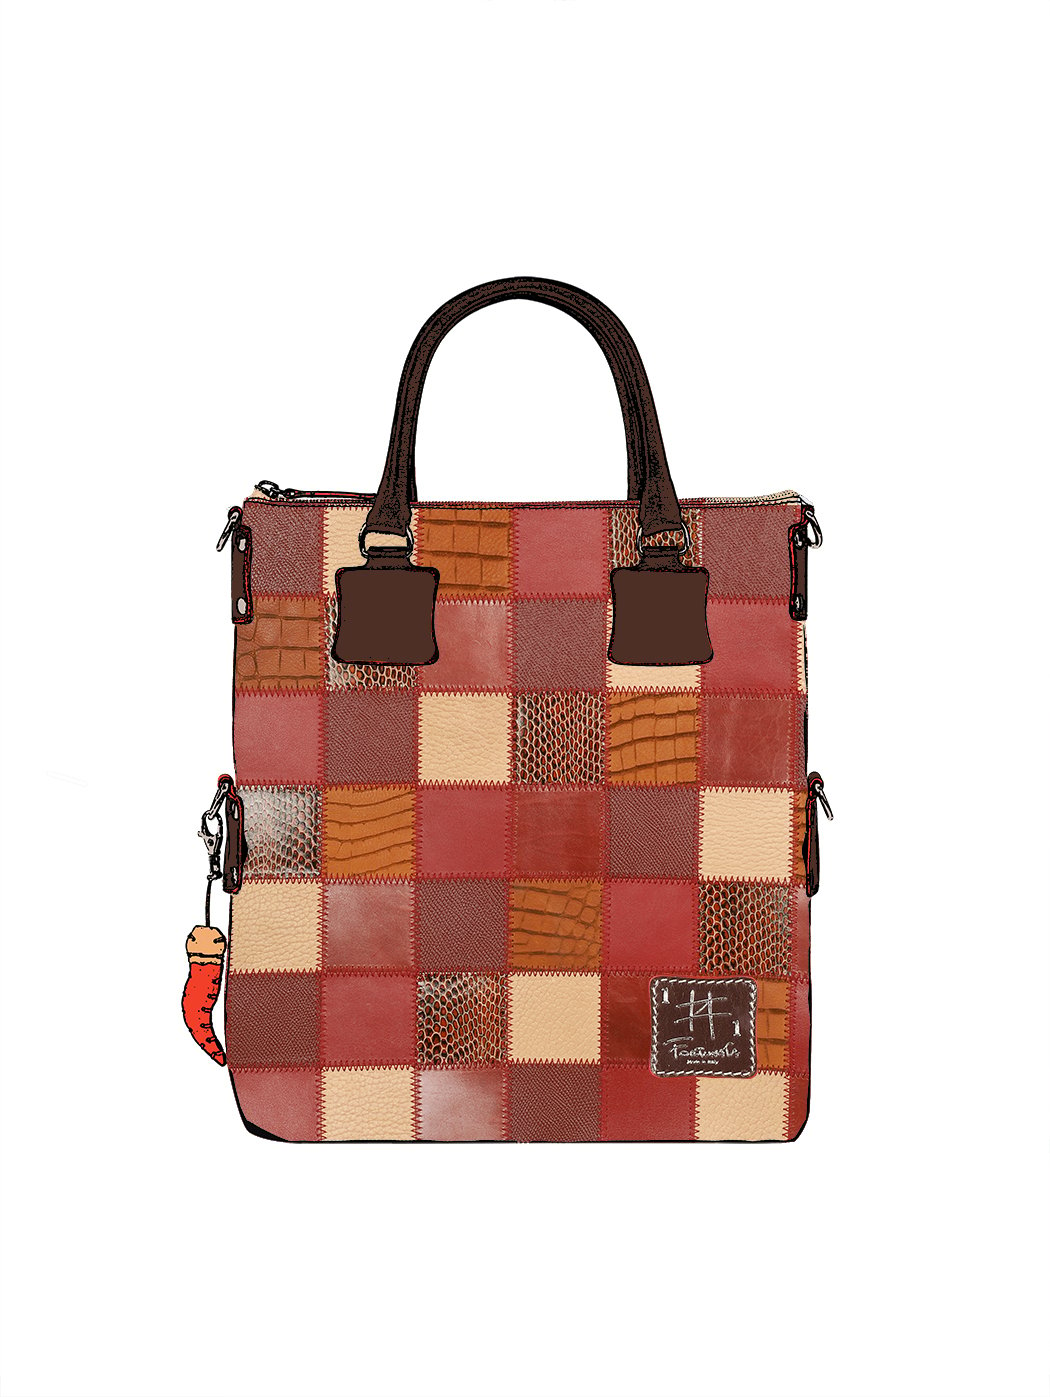 Дизайнерская сумка из коллекции Fortunata в стиле пэчворк красно - коричневого цвета